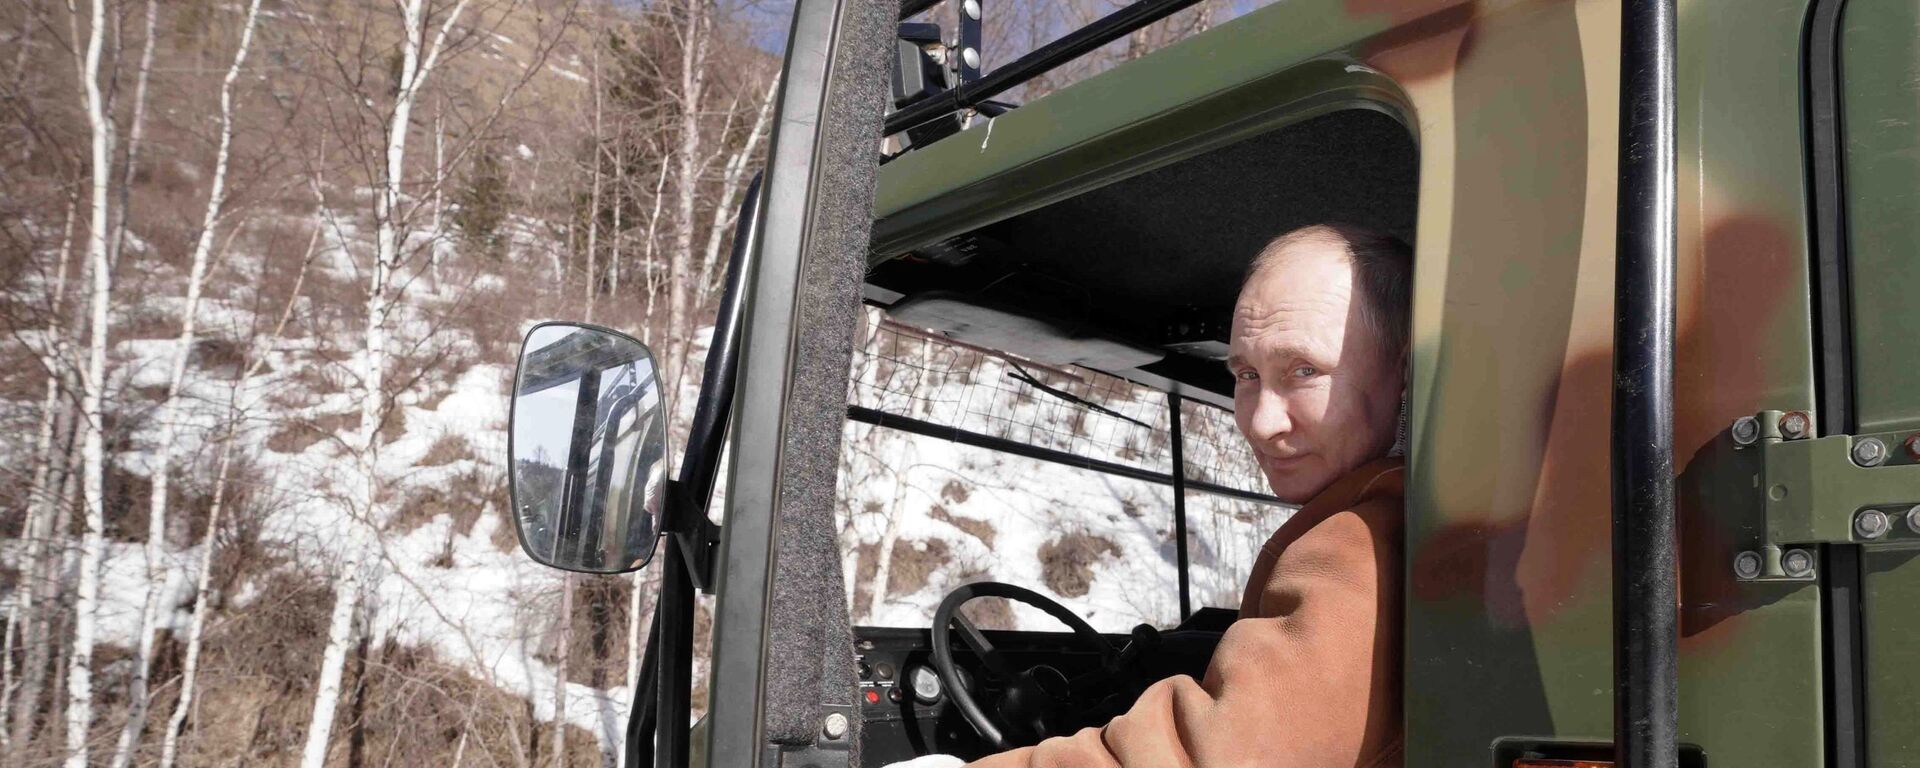 Президент РФ Владимир Путин управляет вездеходом во время прогулки в тайге - Sputnik Արմենիա, 1920, 22.03.2021